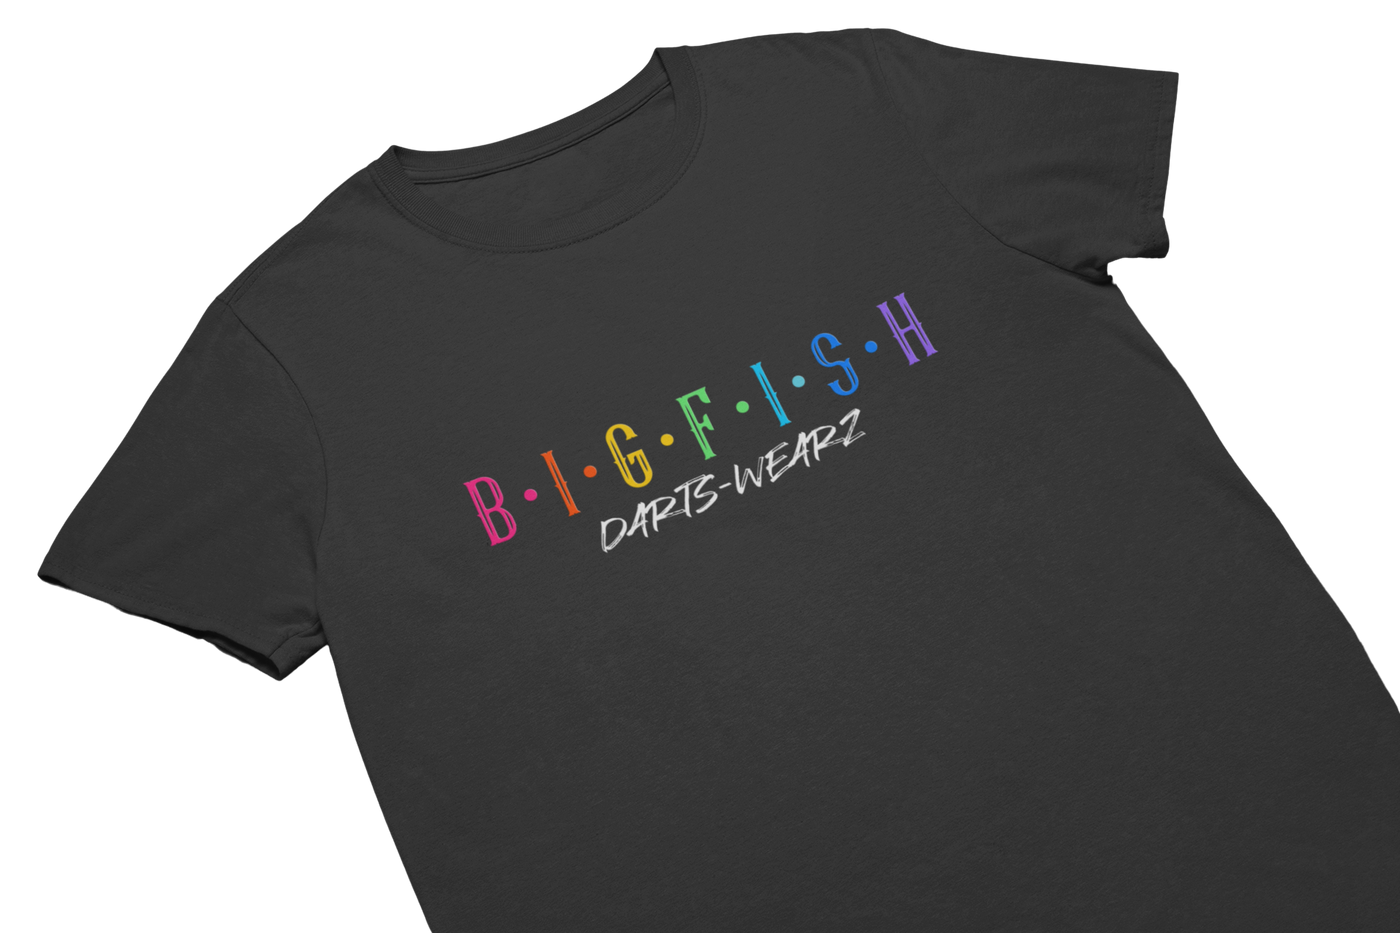 BIGFISH X DARTS-WEARZ ORIGINALS© - T-Shirt Schwarz